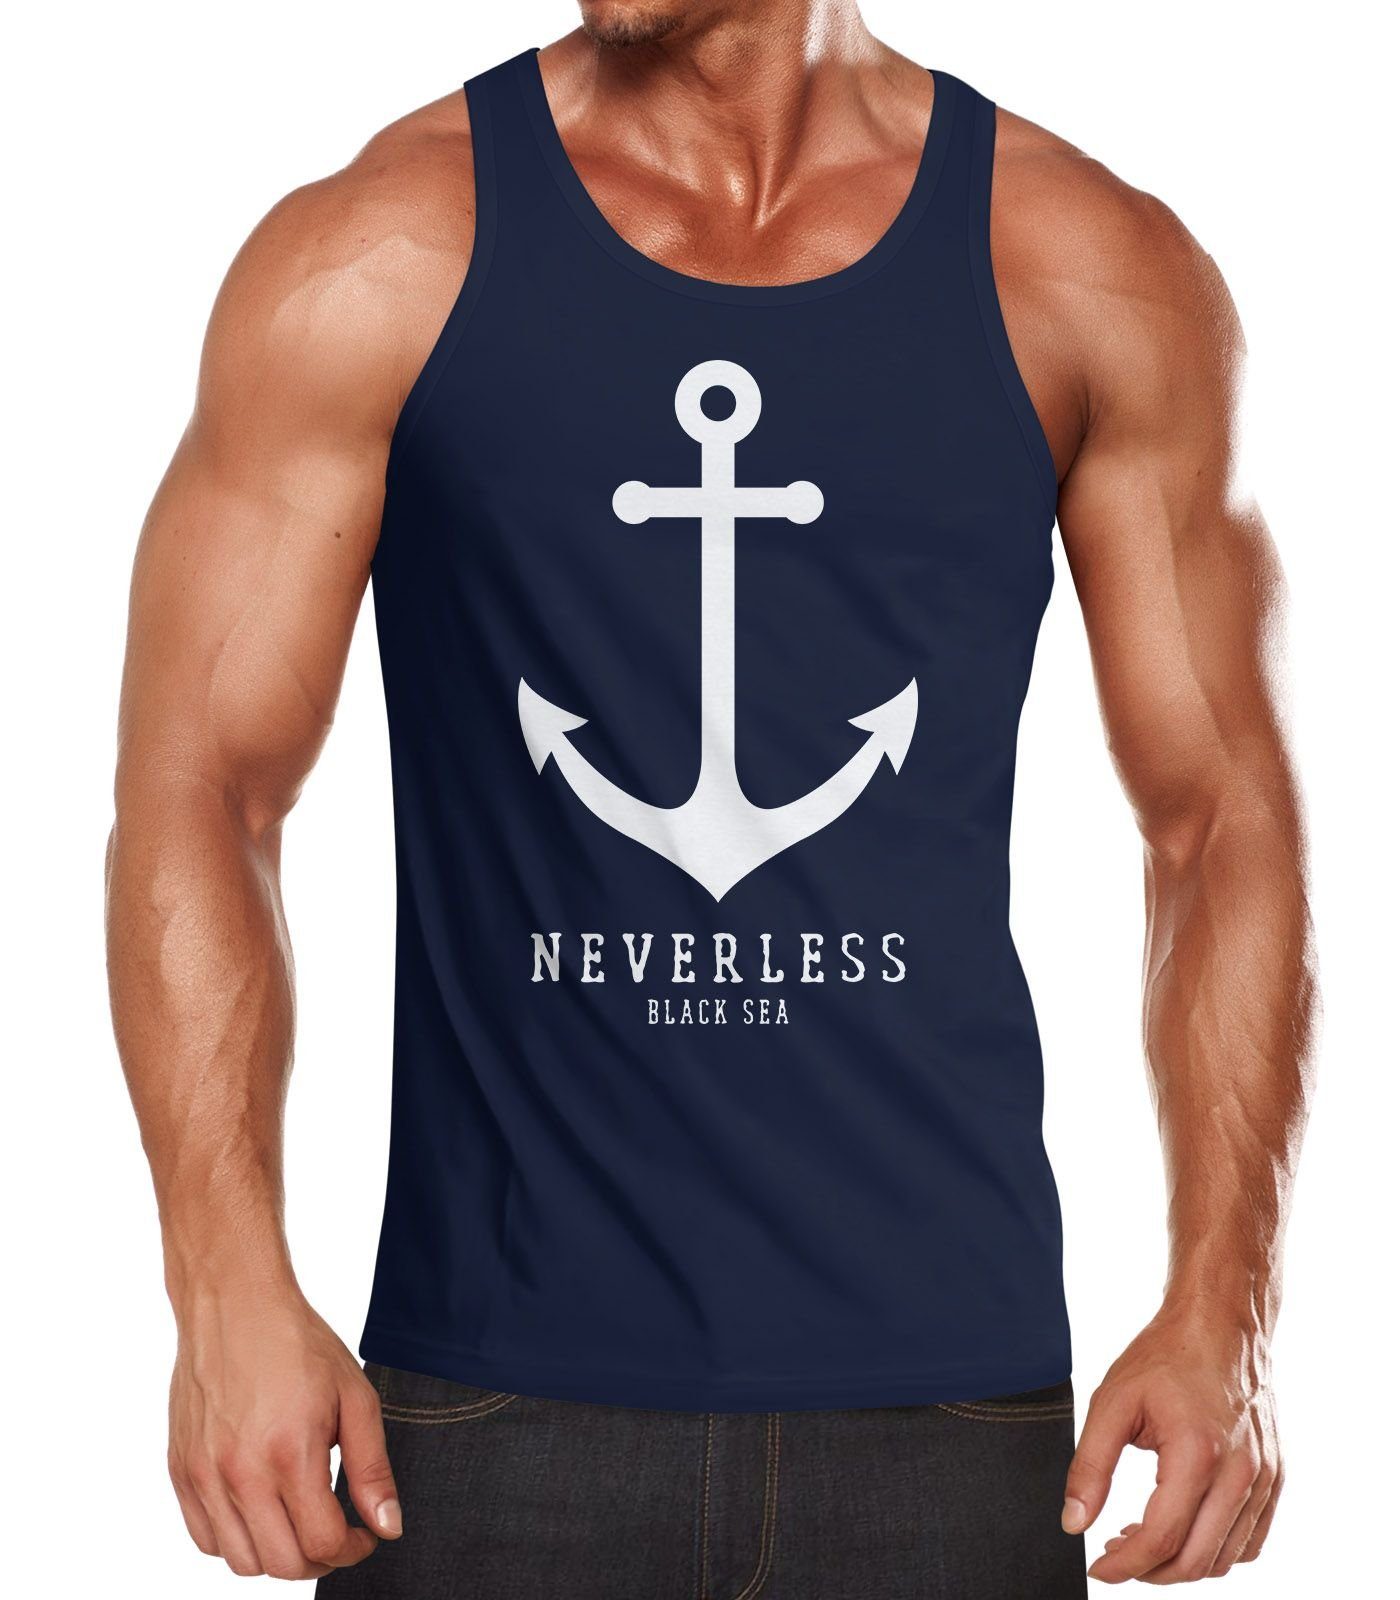 Neverless® Anker Neverless mit Tanktop Herren navy Print Muskelshirt Tank-Top Muscle Shirt